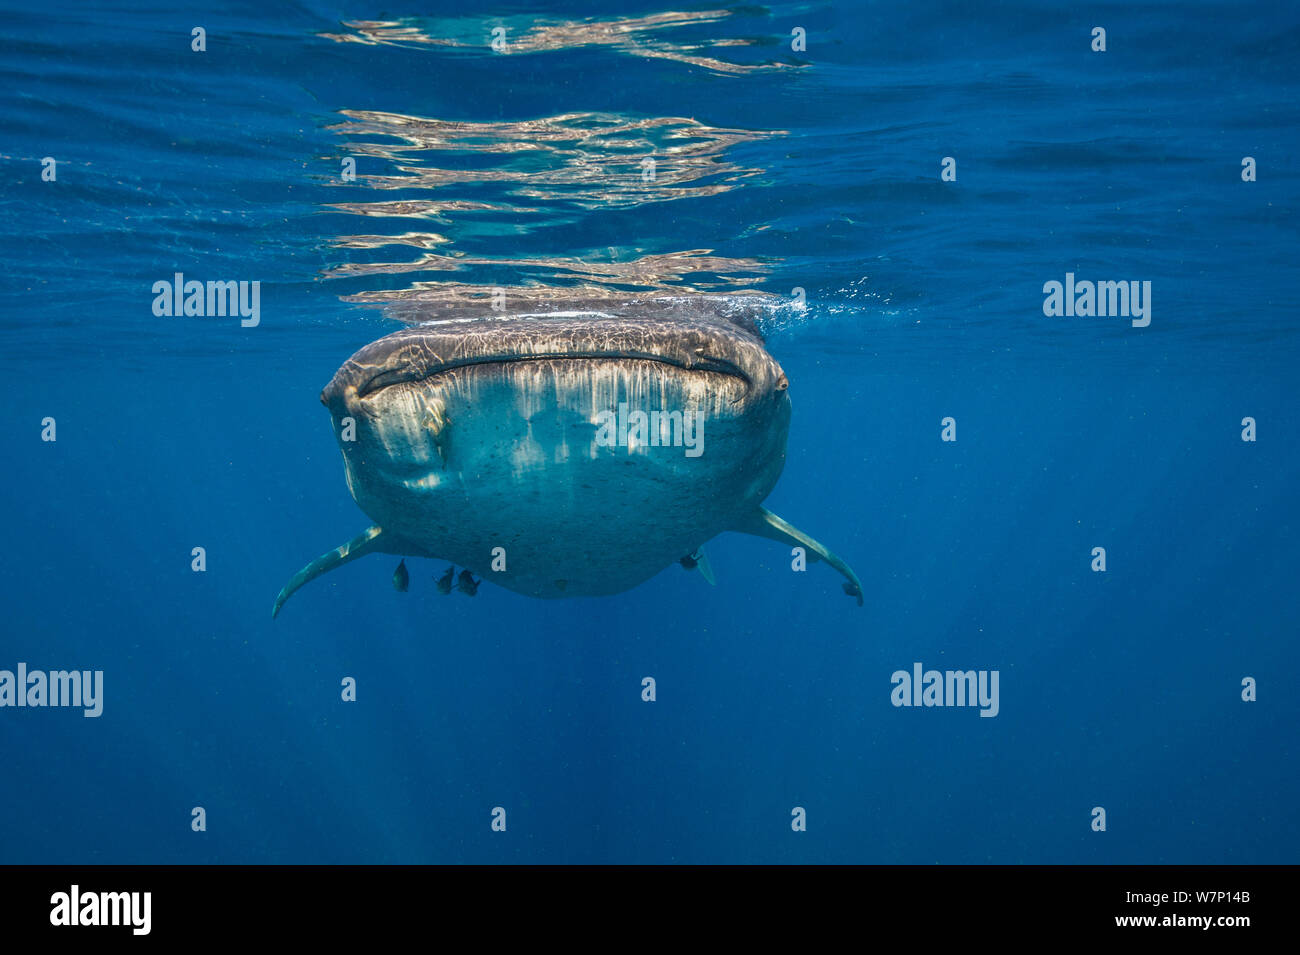 Un squalo balena (Rhincodon typus) nuoto in superficie, Isla Mujeres, Quintana Roo, la penisola dello Yucatan, Messico, Mar dei Caraibi. Foto Stock